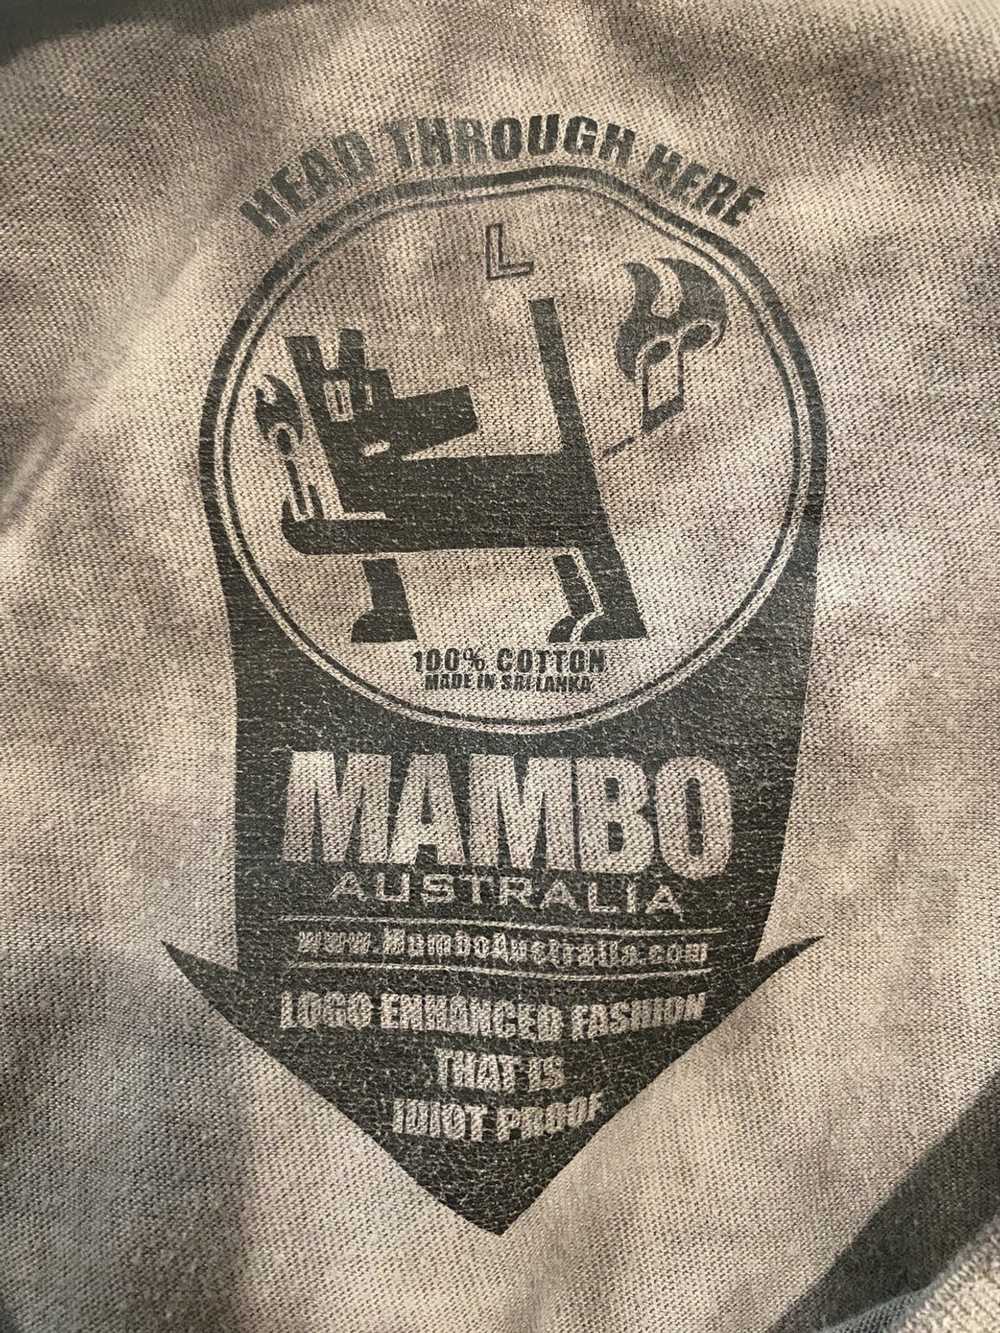 Mambo 100% Mambo Tee - image 2